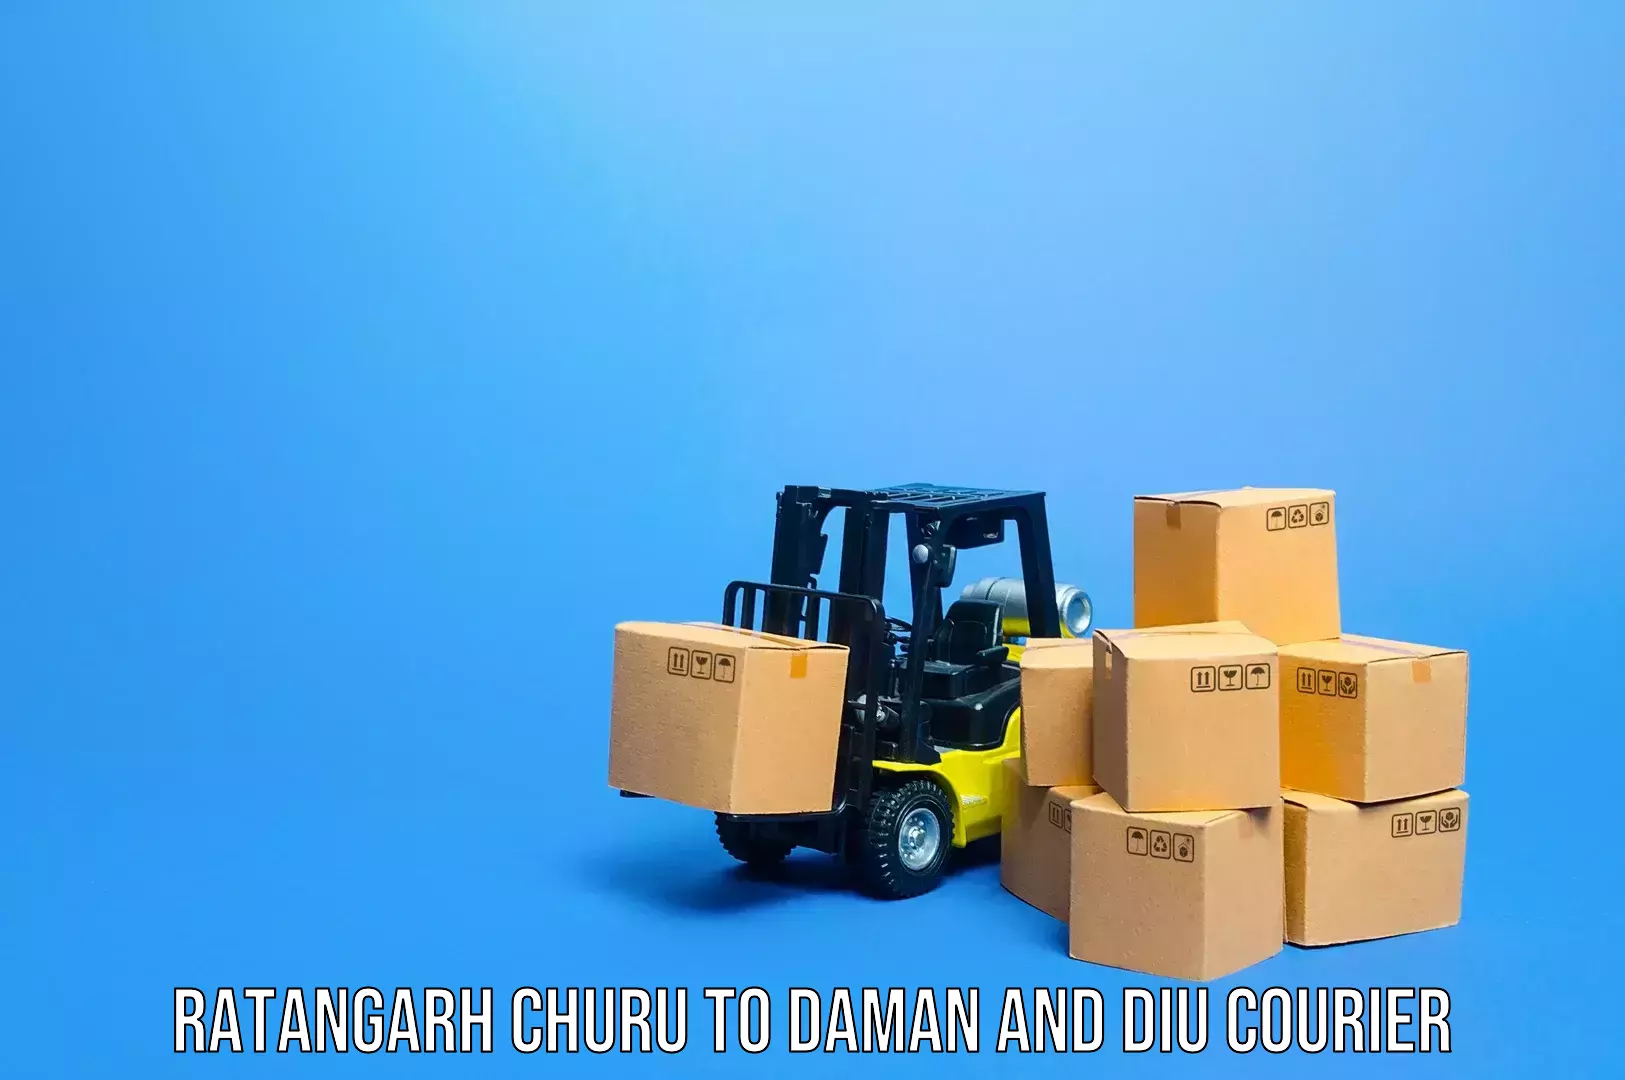 Baggage courier rates Ratangarh Churu to Daman and Diu